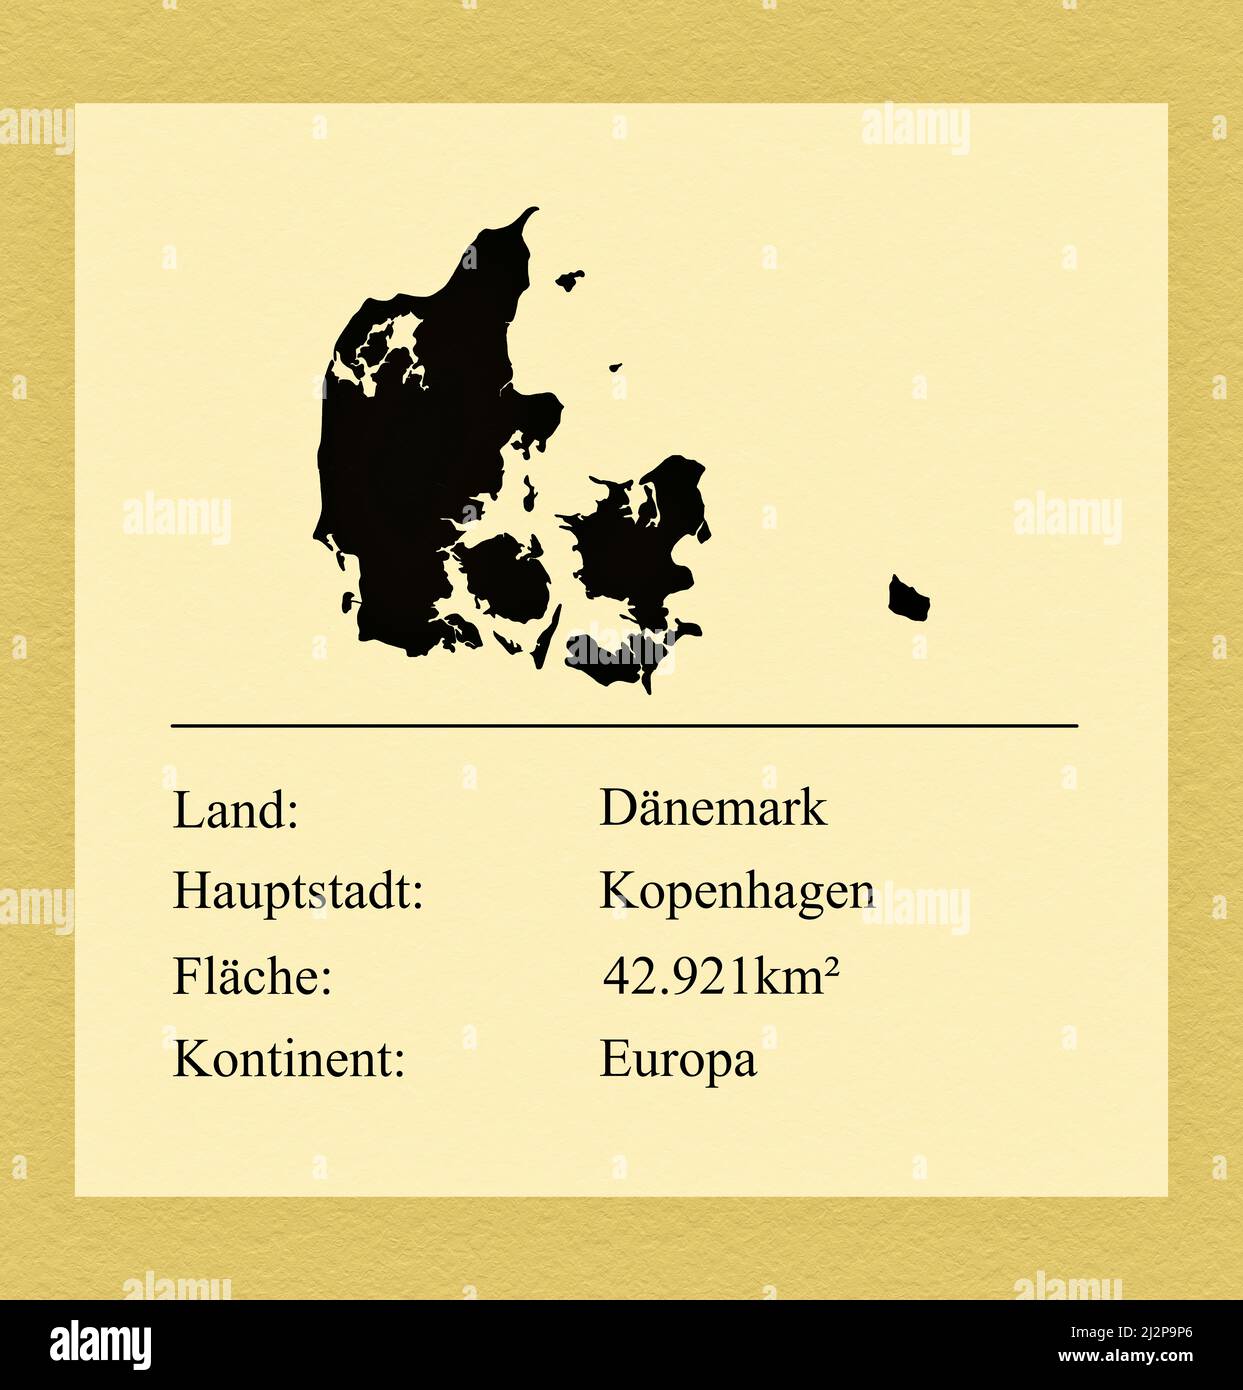 Umrisse des Landes Dänemark, darunter ein kleiner Steckbrief mit Ländernamen, Hauptstadt, Fläche und Kontinent Foto de stock